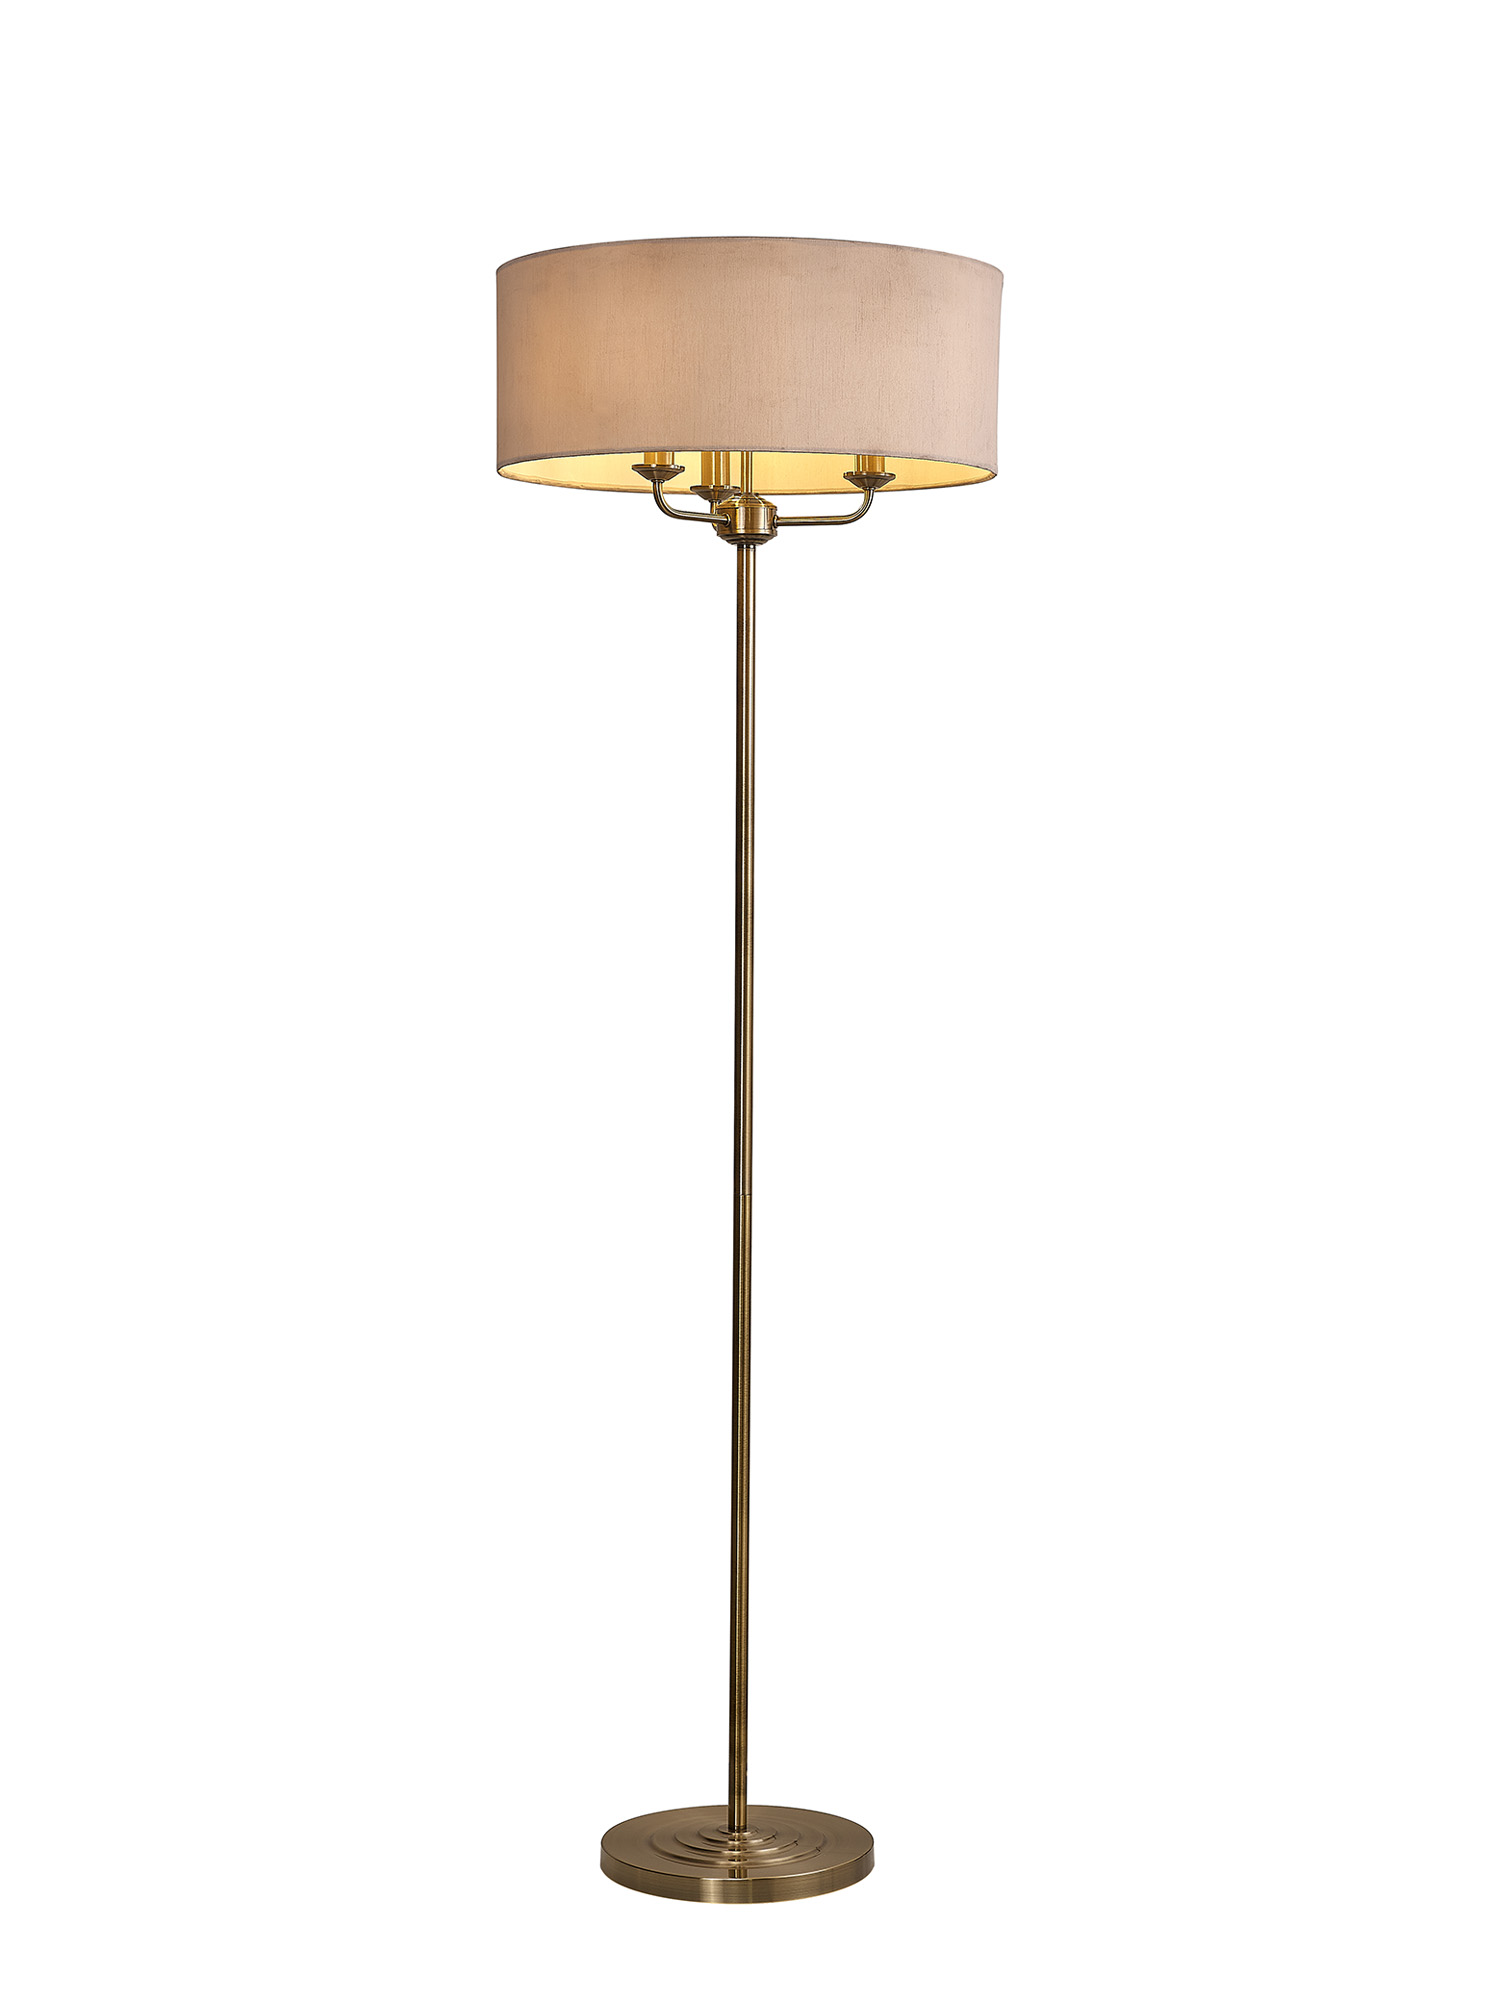 DK0916  Banyan 45cm 3 Light Floor Lamp Antique Brass; Nude Beige